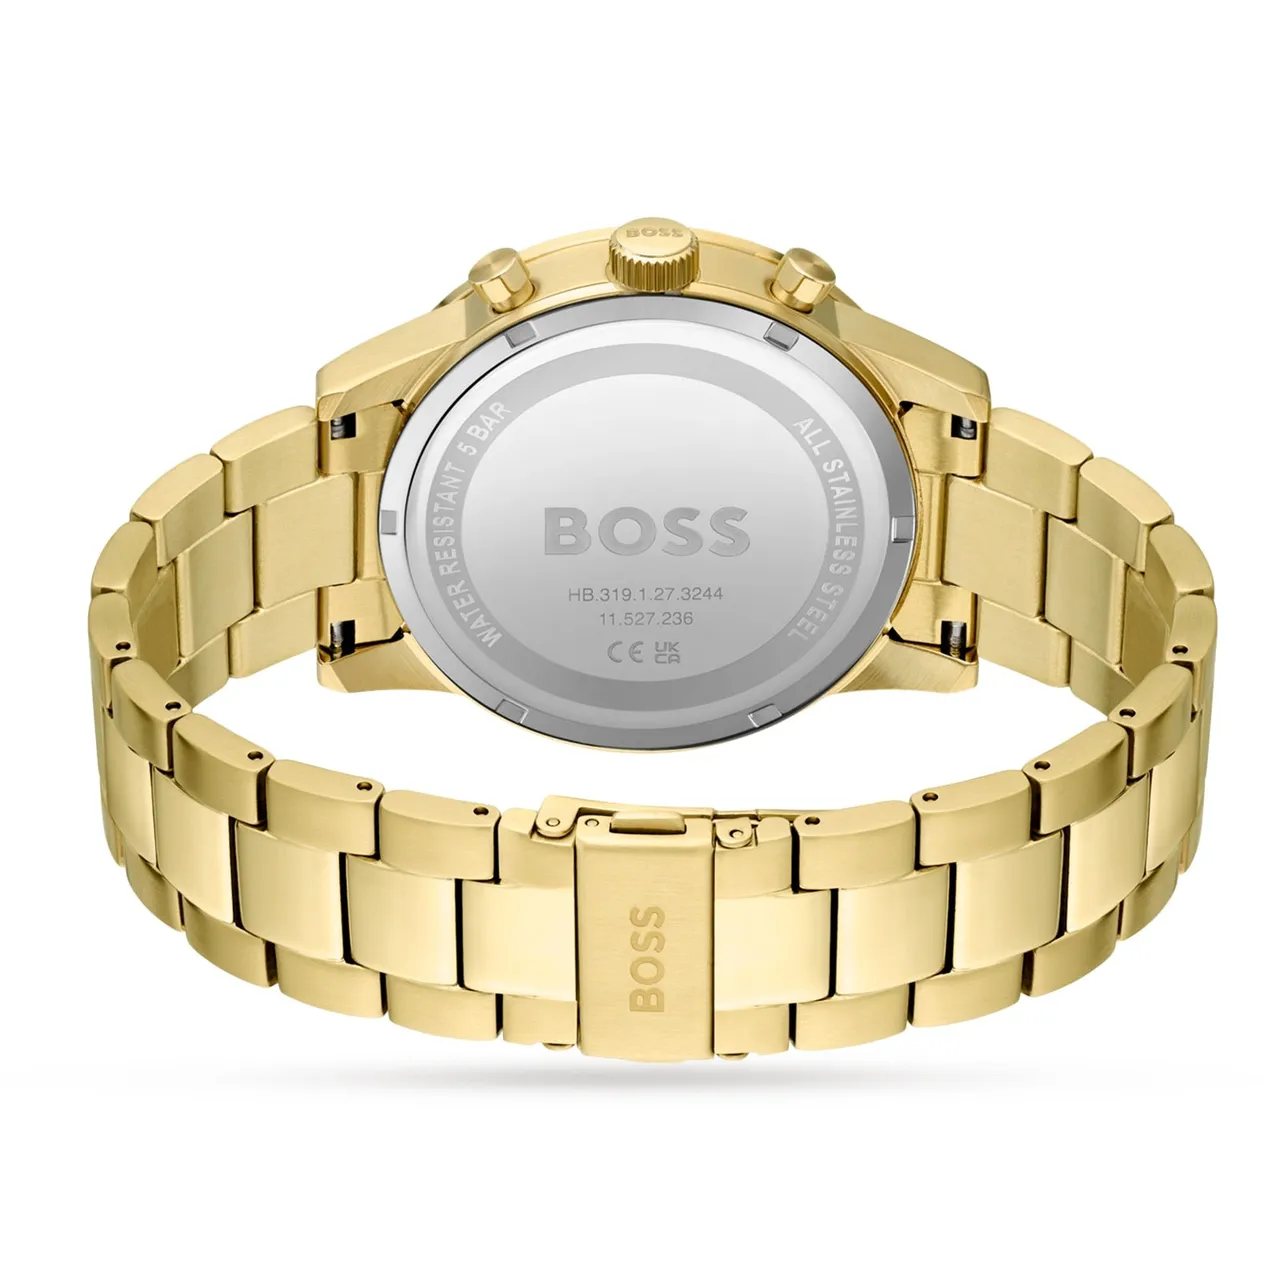 Hugo Boss 1513923 Allure Men's Watch